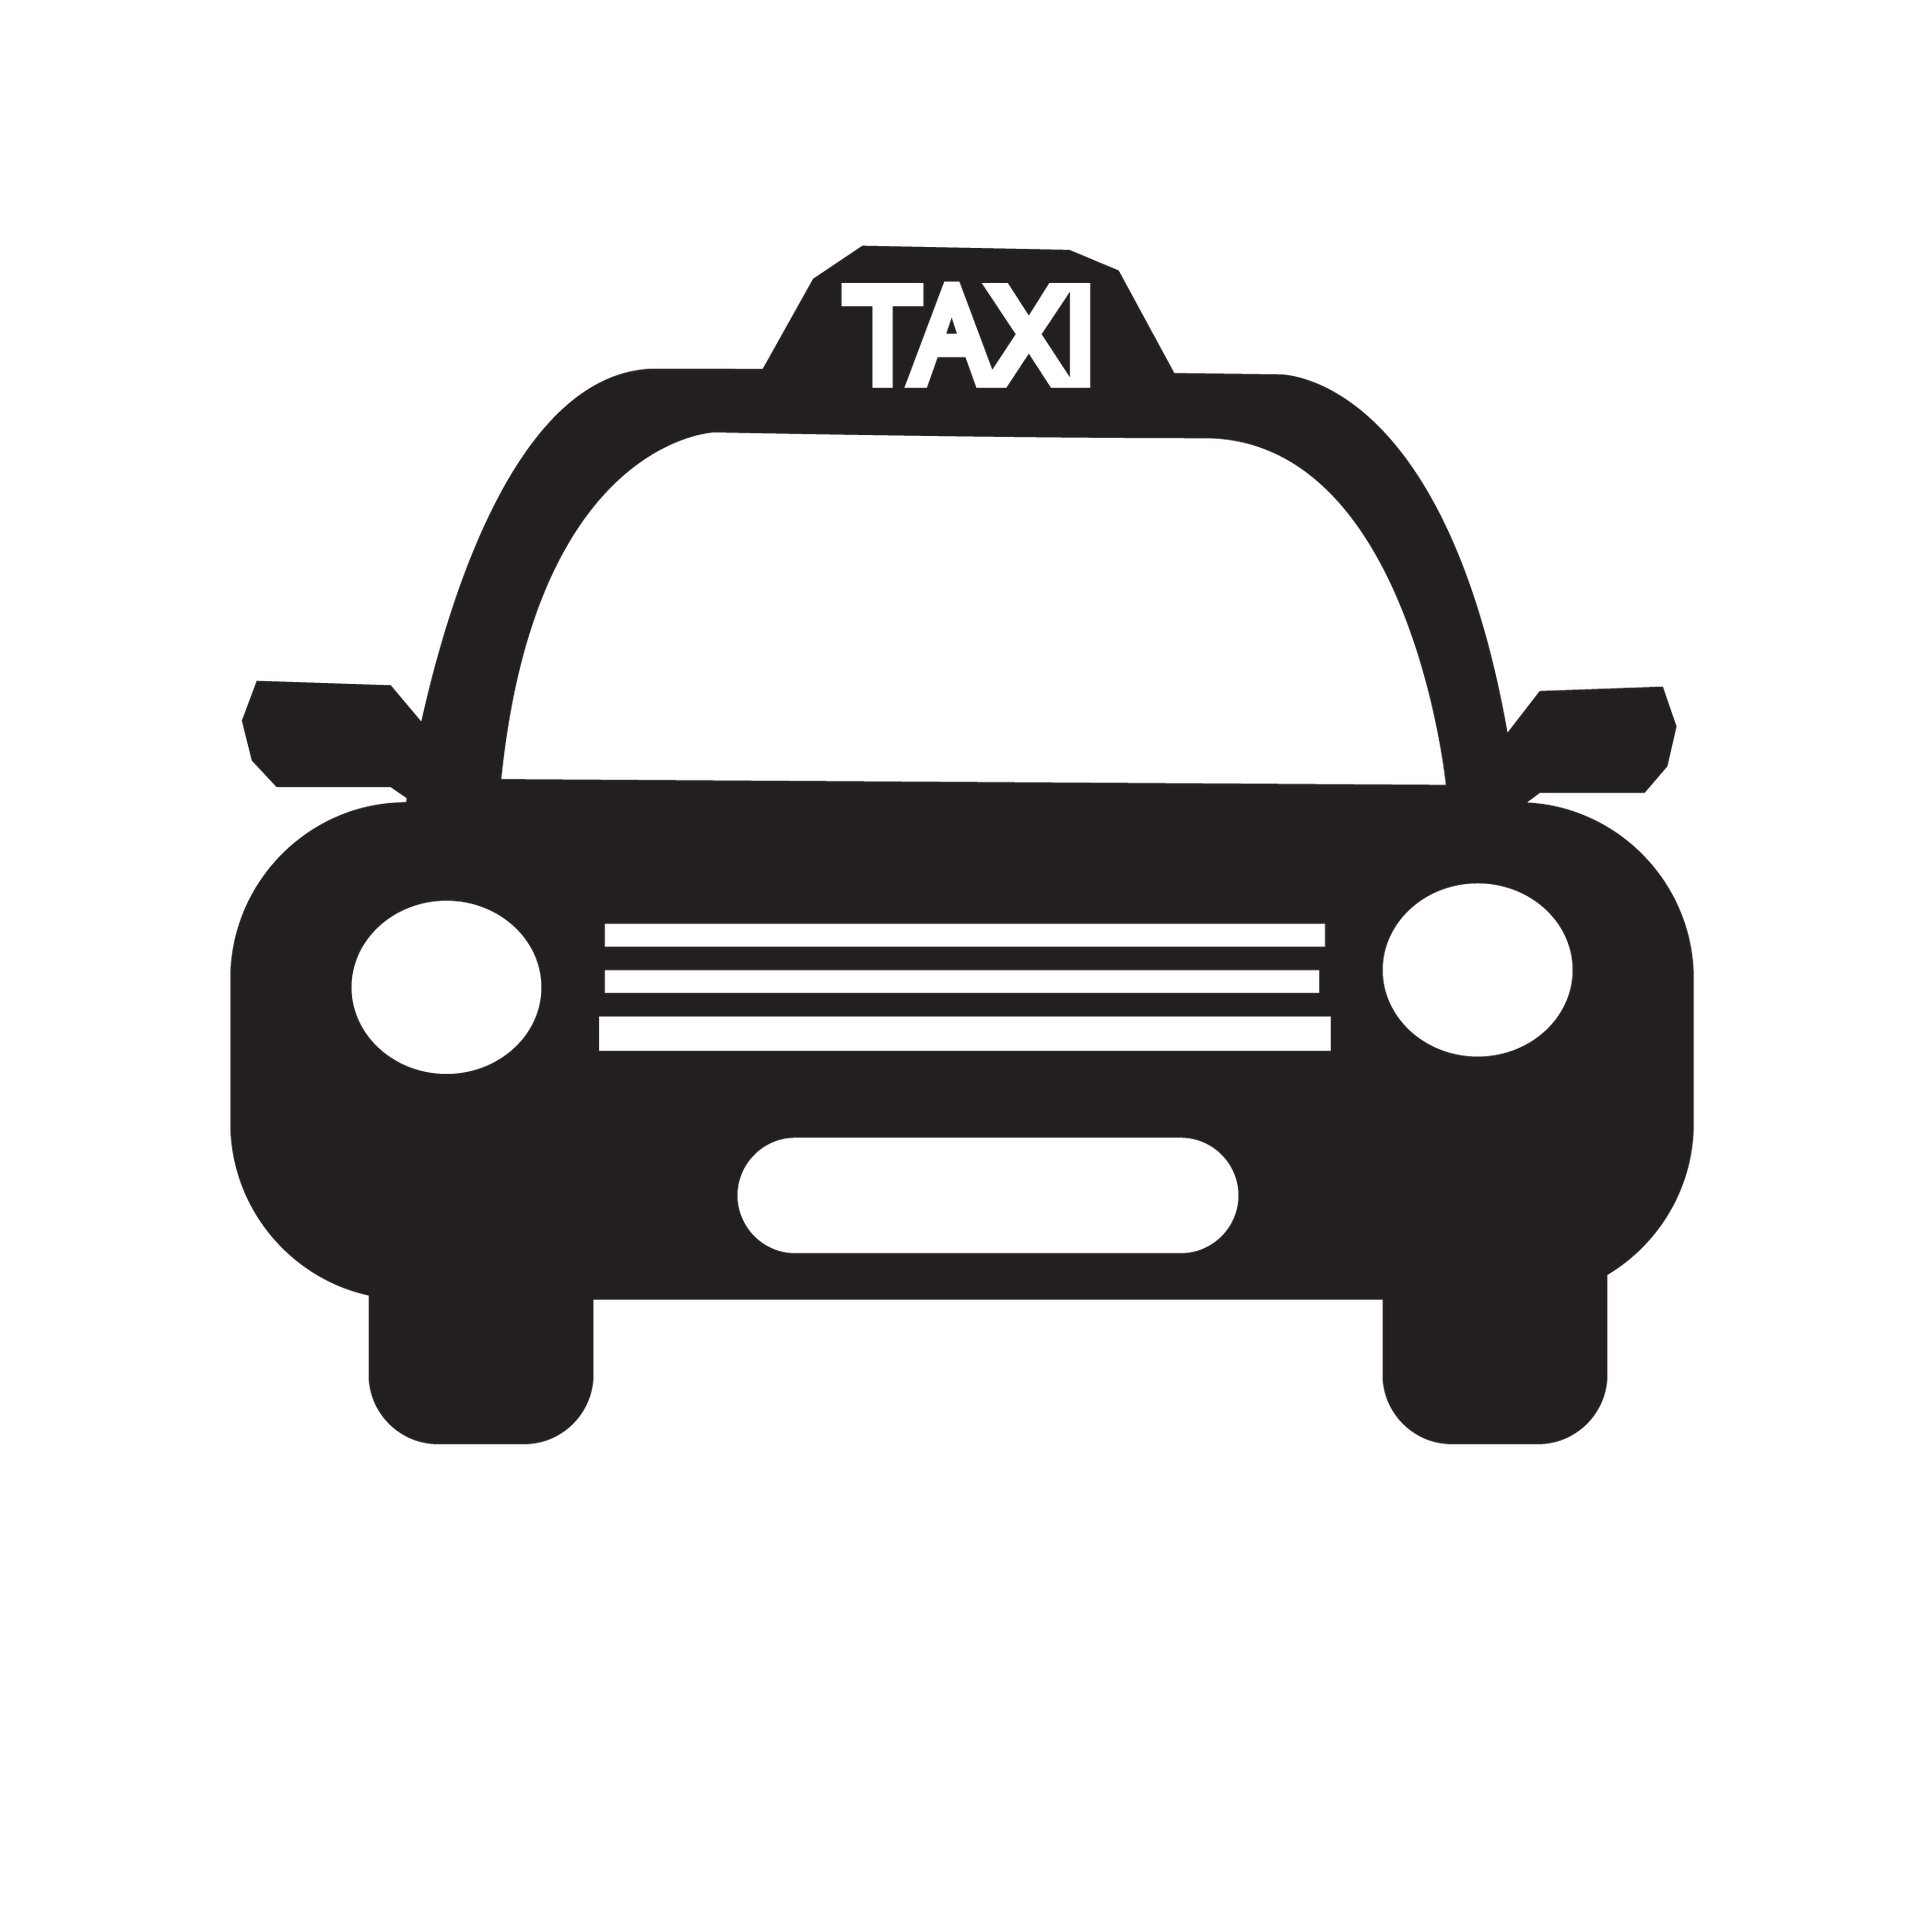 taxi icon 602136 1920